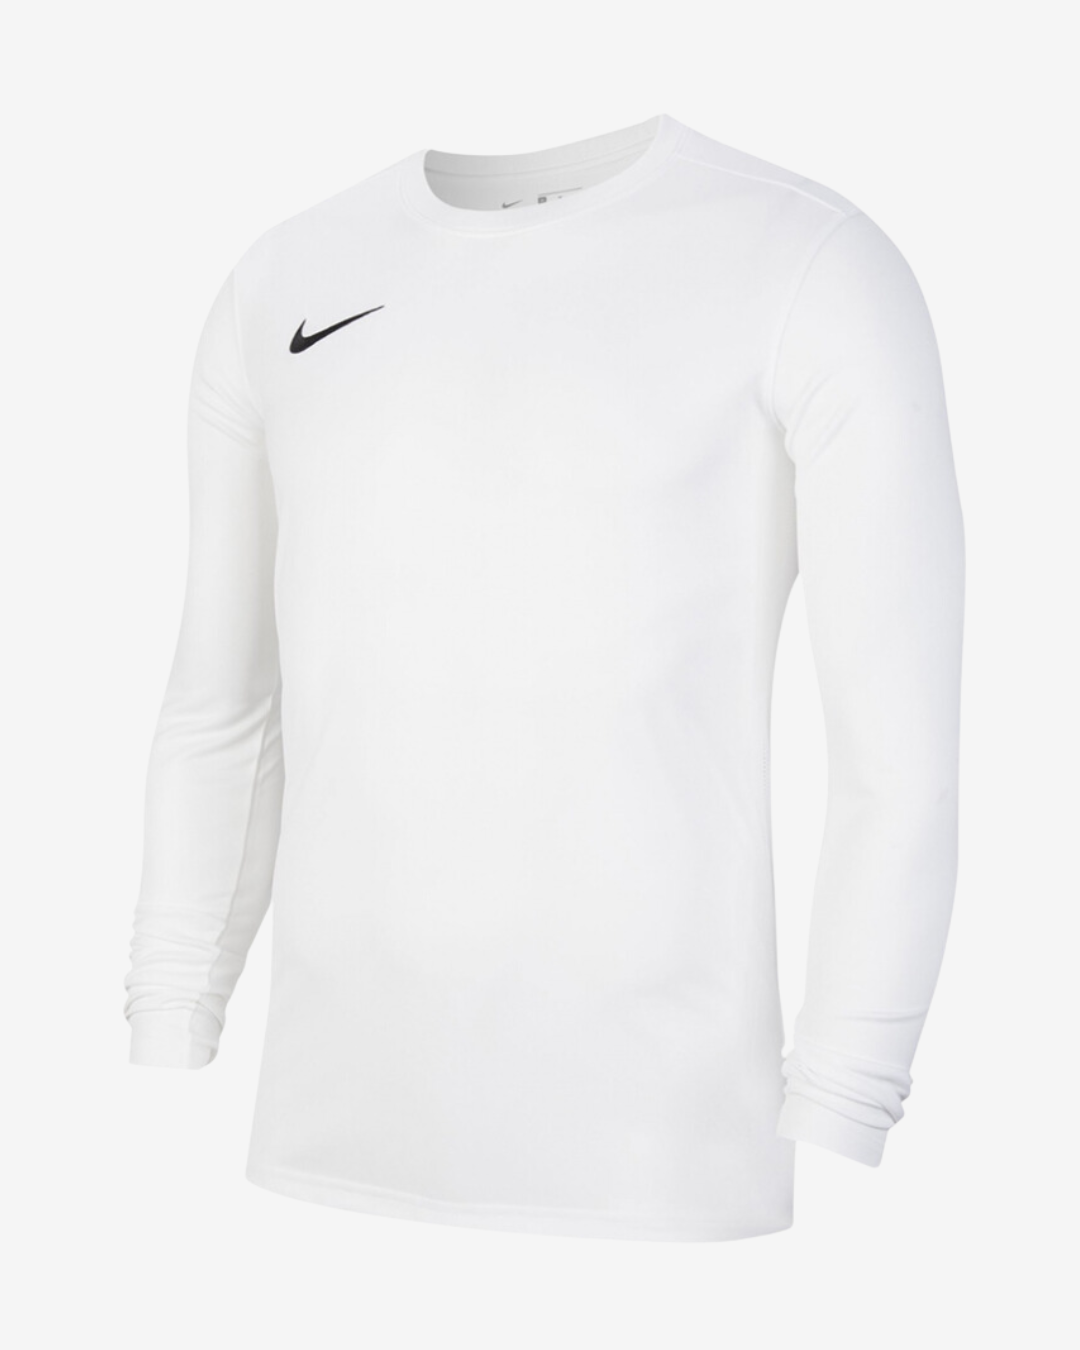 Billede af Nike Dri-fit park 7 langærmet t-shirt - Hvid - Str. S - Modish.dk